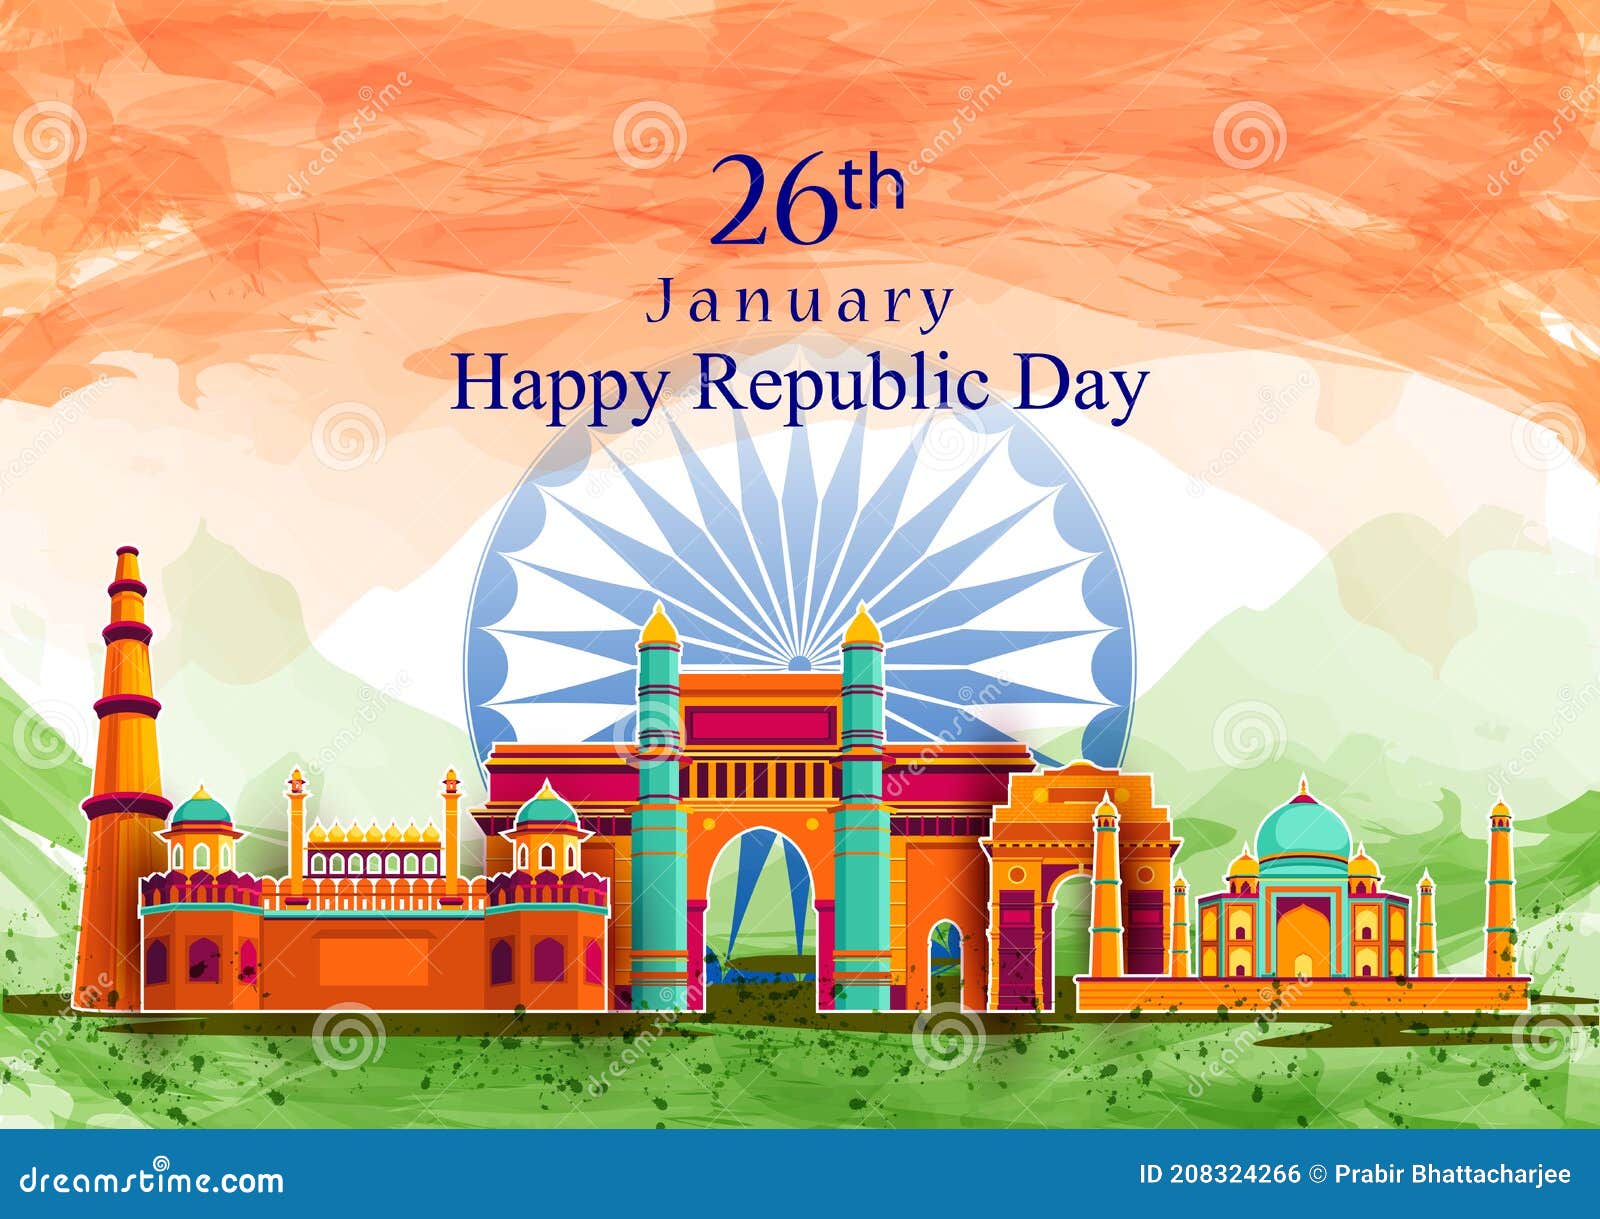 Thật tuyệt vời khi được chứng kiến Quốc kỳ Ấn Độ và Tượng đài Lịch sử Nổi tiếng trong hình ảnh đẹp rực rỡ. Hãy đến và chiêm ngưỡng sự đặc sắc của hình ảnh này!